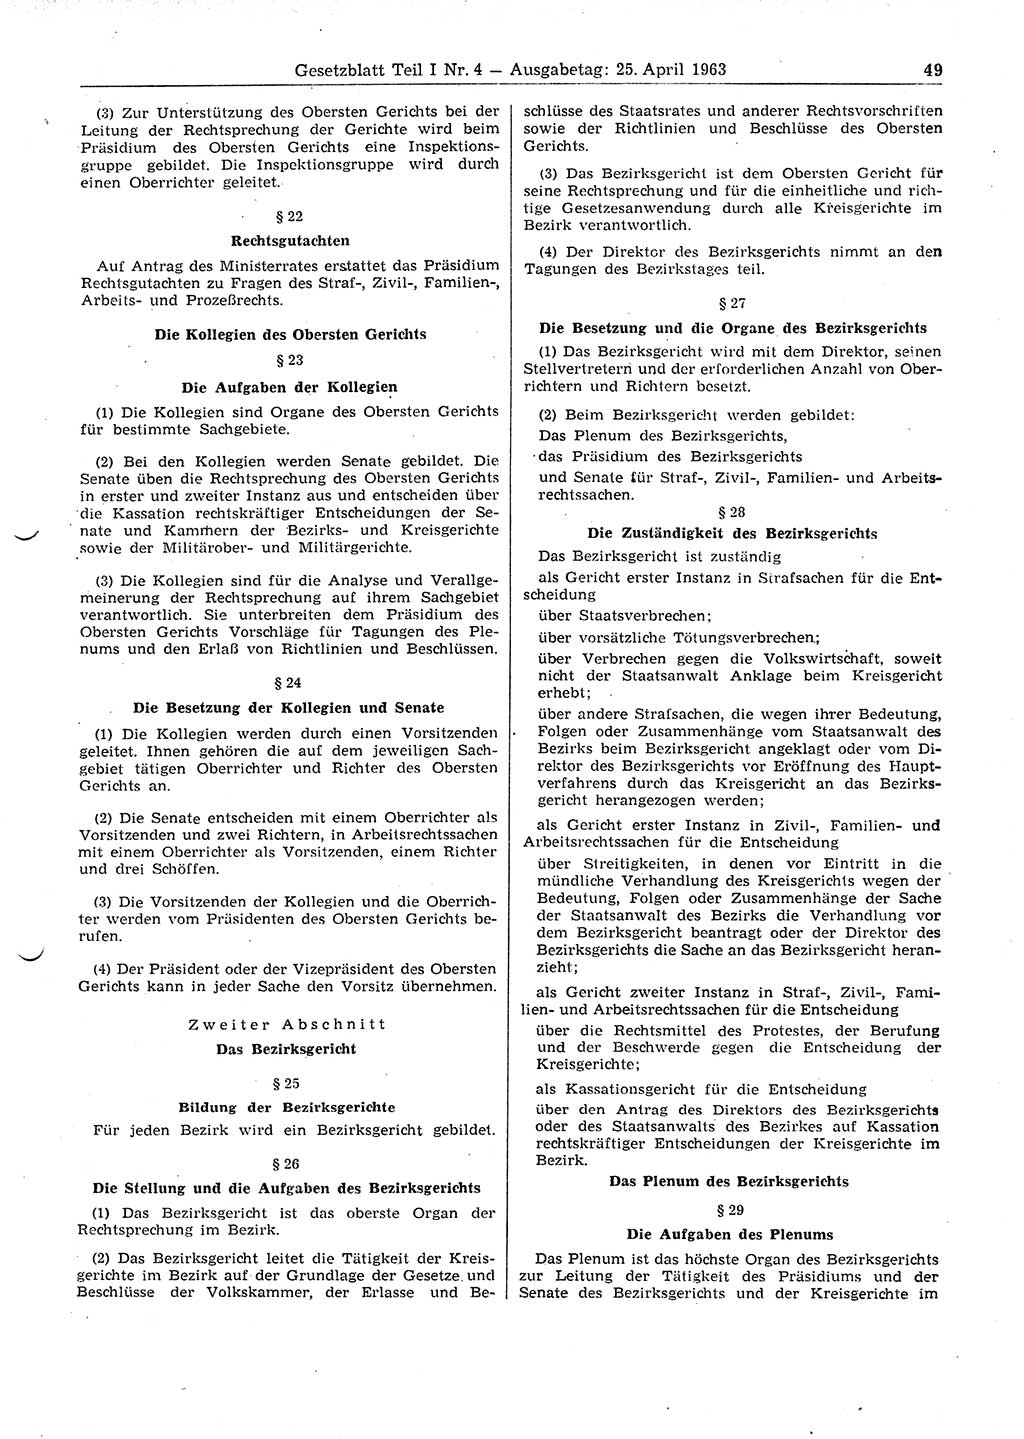 Gesetzblatt (GBl.) der Deutschen Demokratischen Republik (DDR) Teil Ⅰ 1963, Seite 49 (GBl. DDR Ⅰ 1963, S. 49)